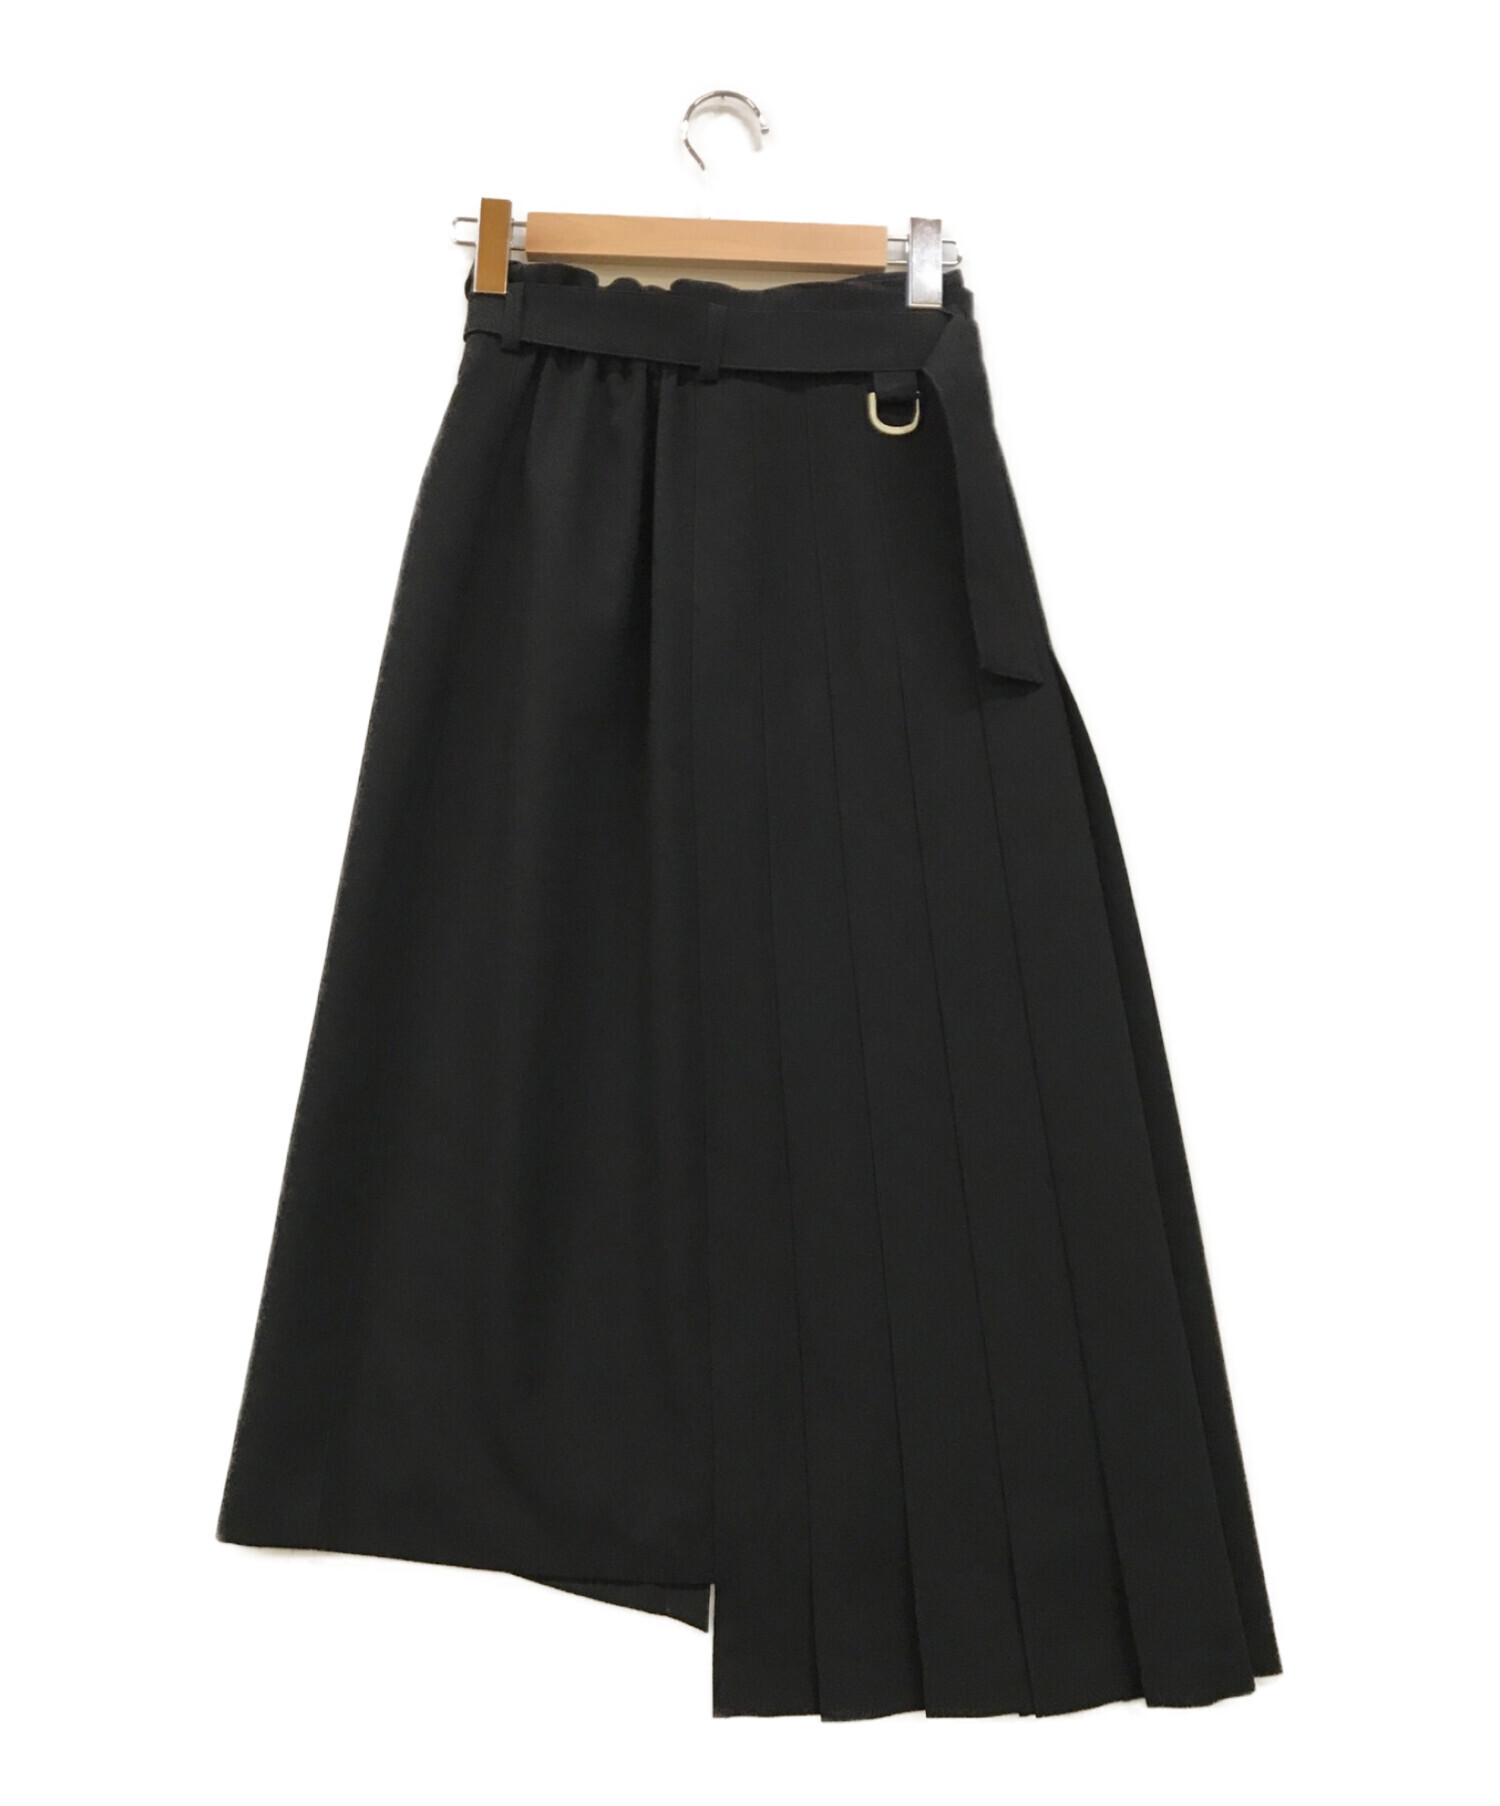 UNITED TOKYO (ユナイテッドトウキョウ) メタルコンビハーフプリーツスカート ブラック サイズ:1